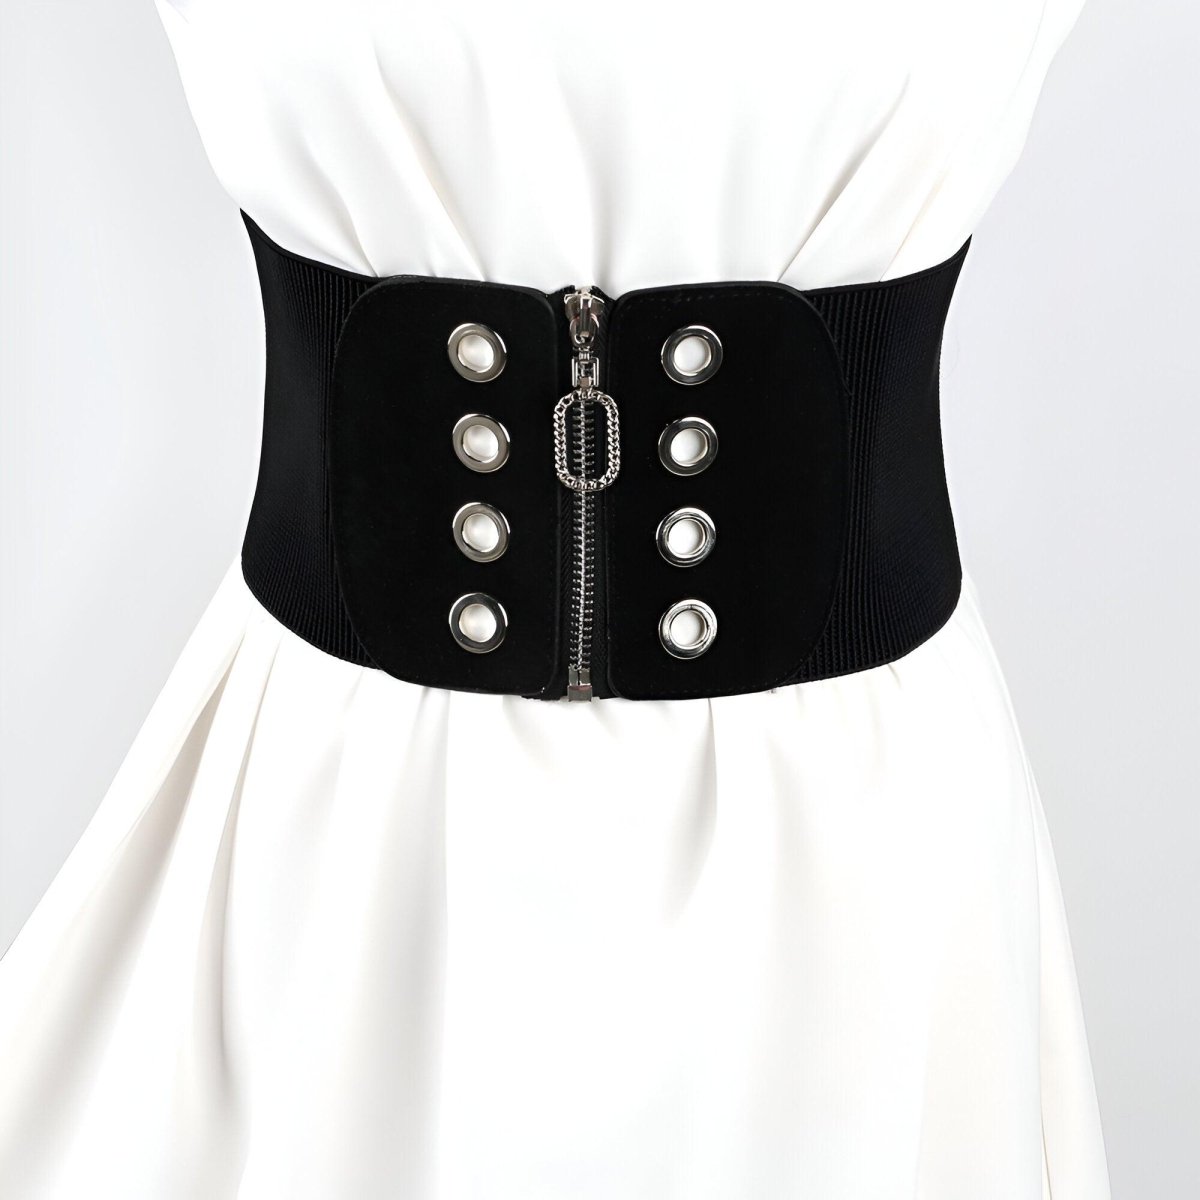 Ceinture corset à fermeture éclair ovale avec œillets, modèle Irwin - La Boutique de la Ceinture